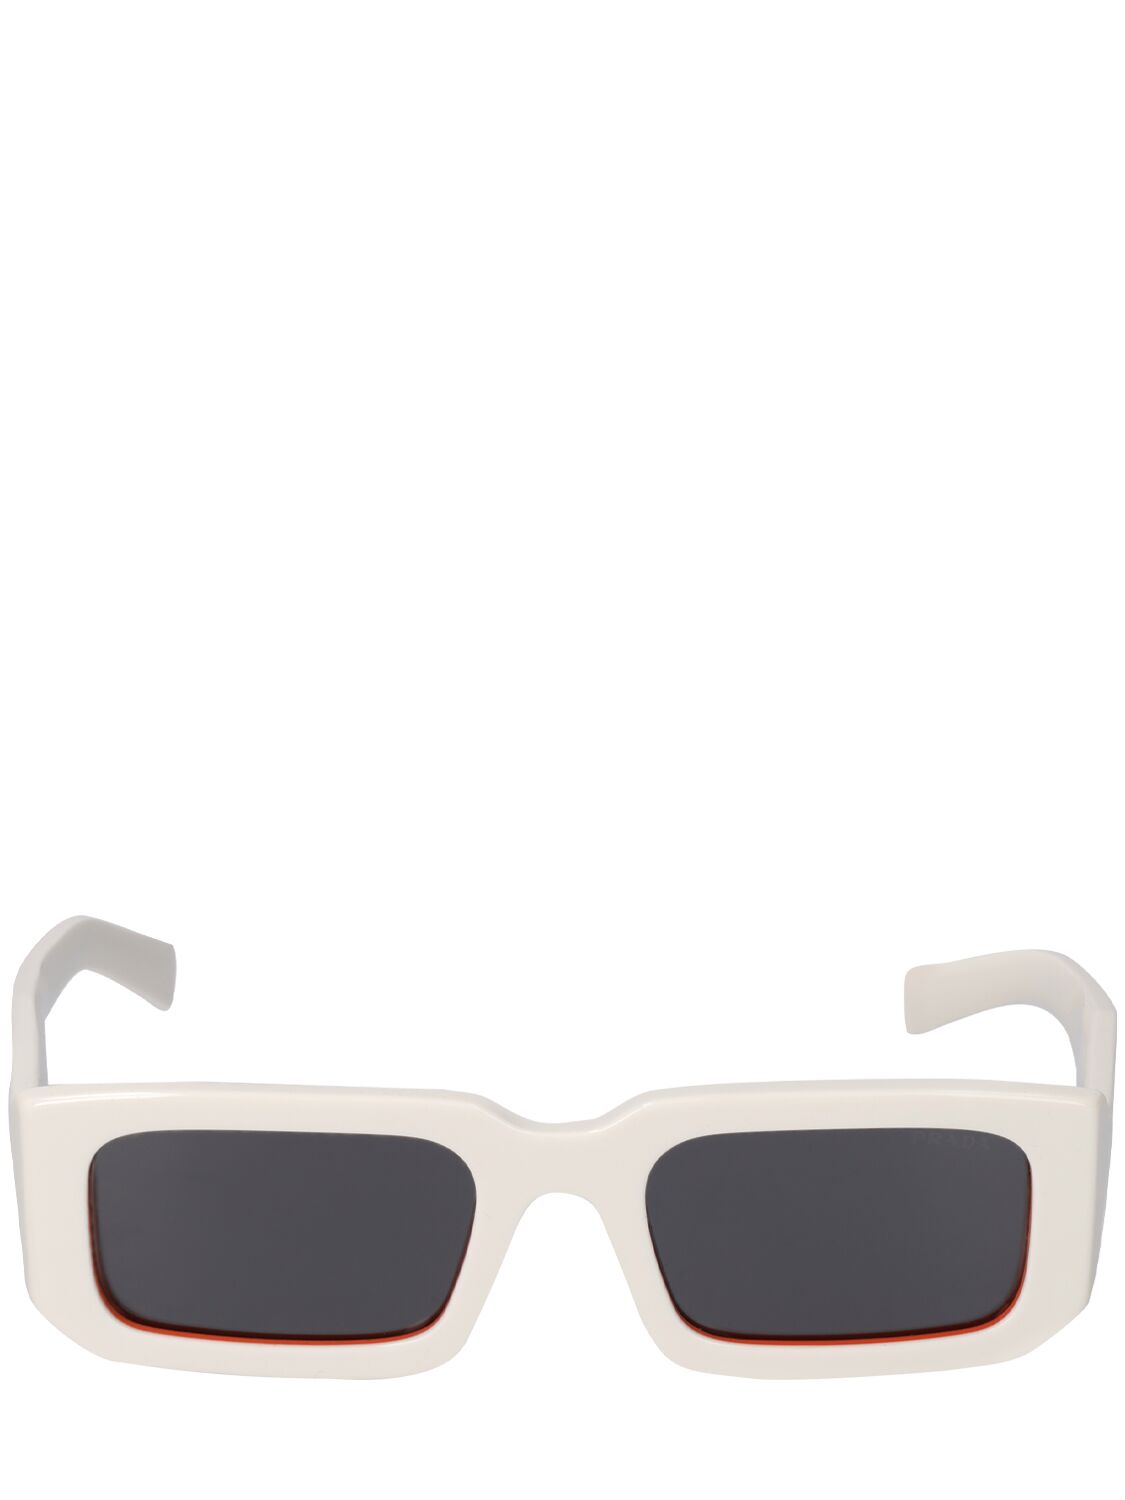 Image of Catwalk Squared Acetate Sunglasses